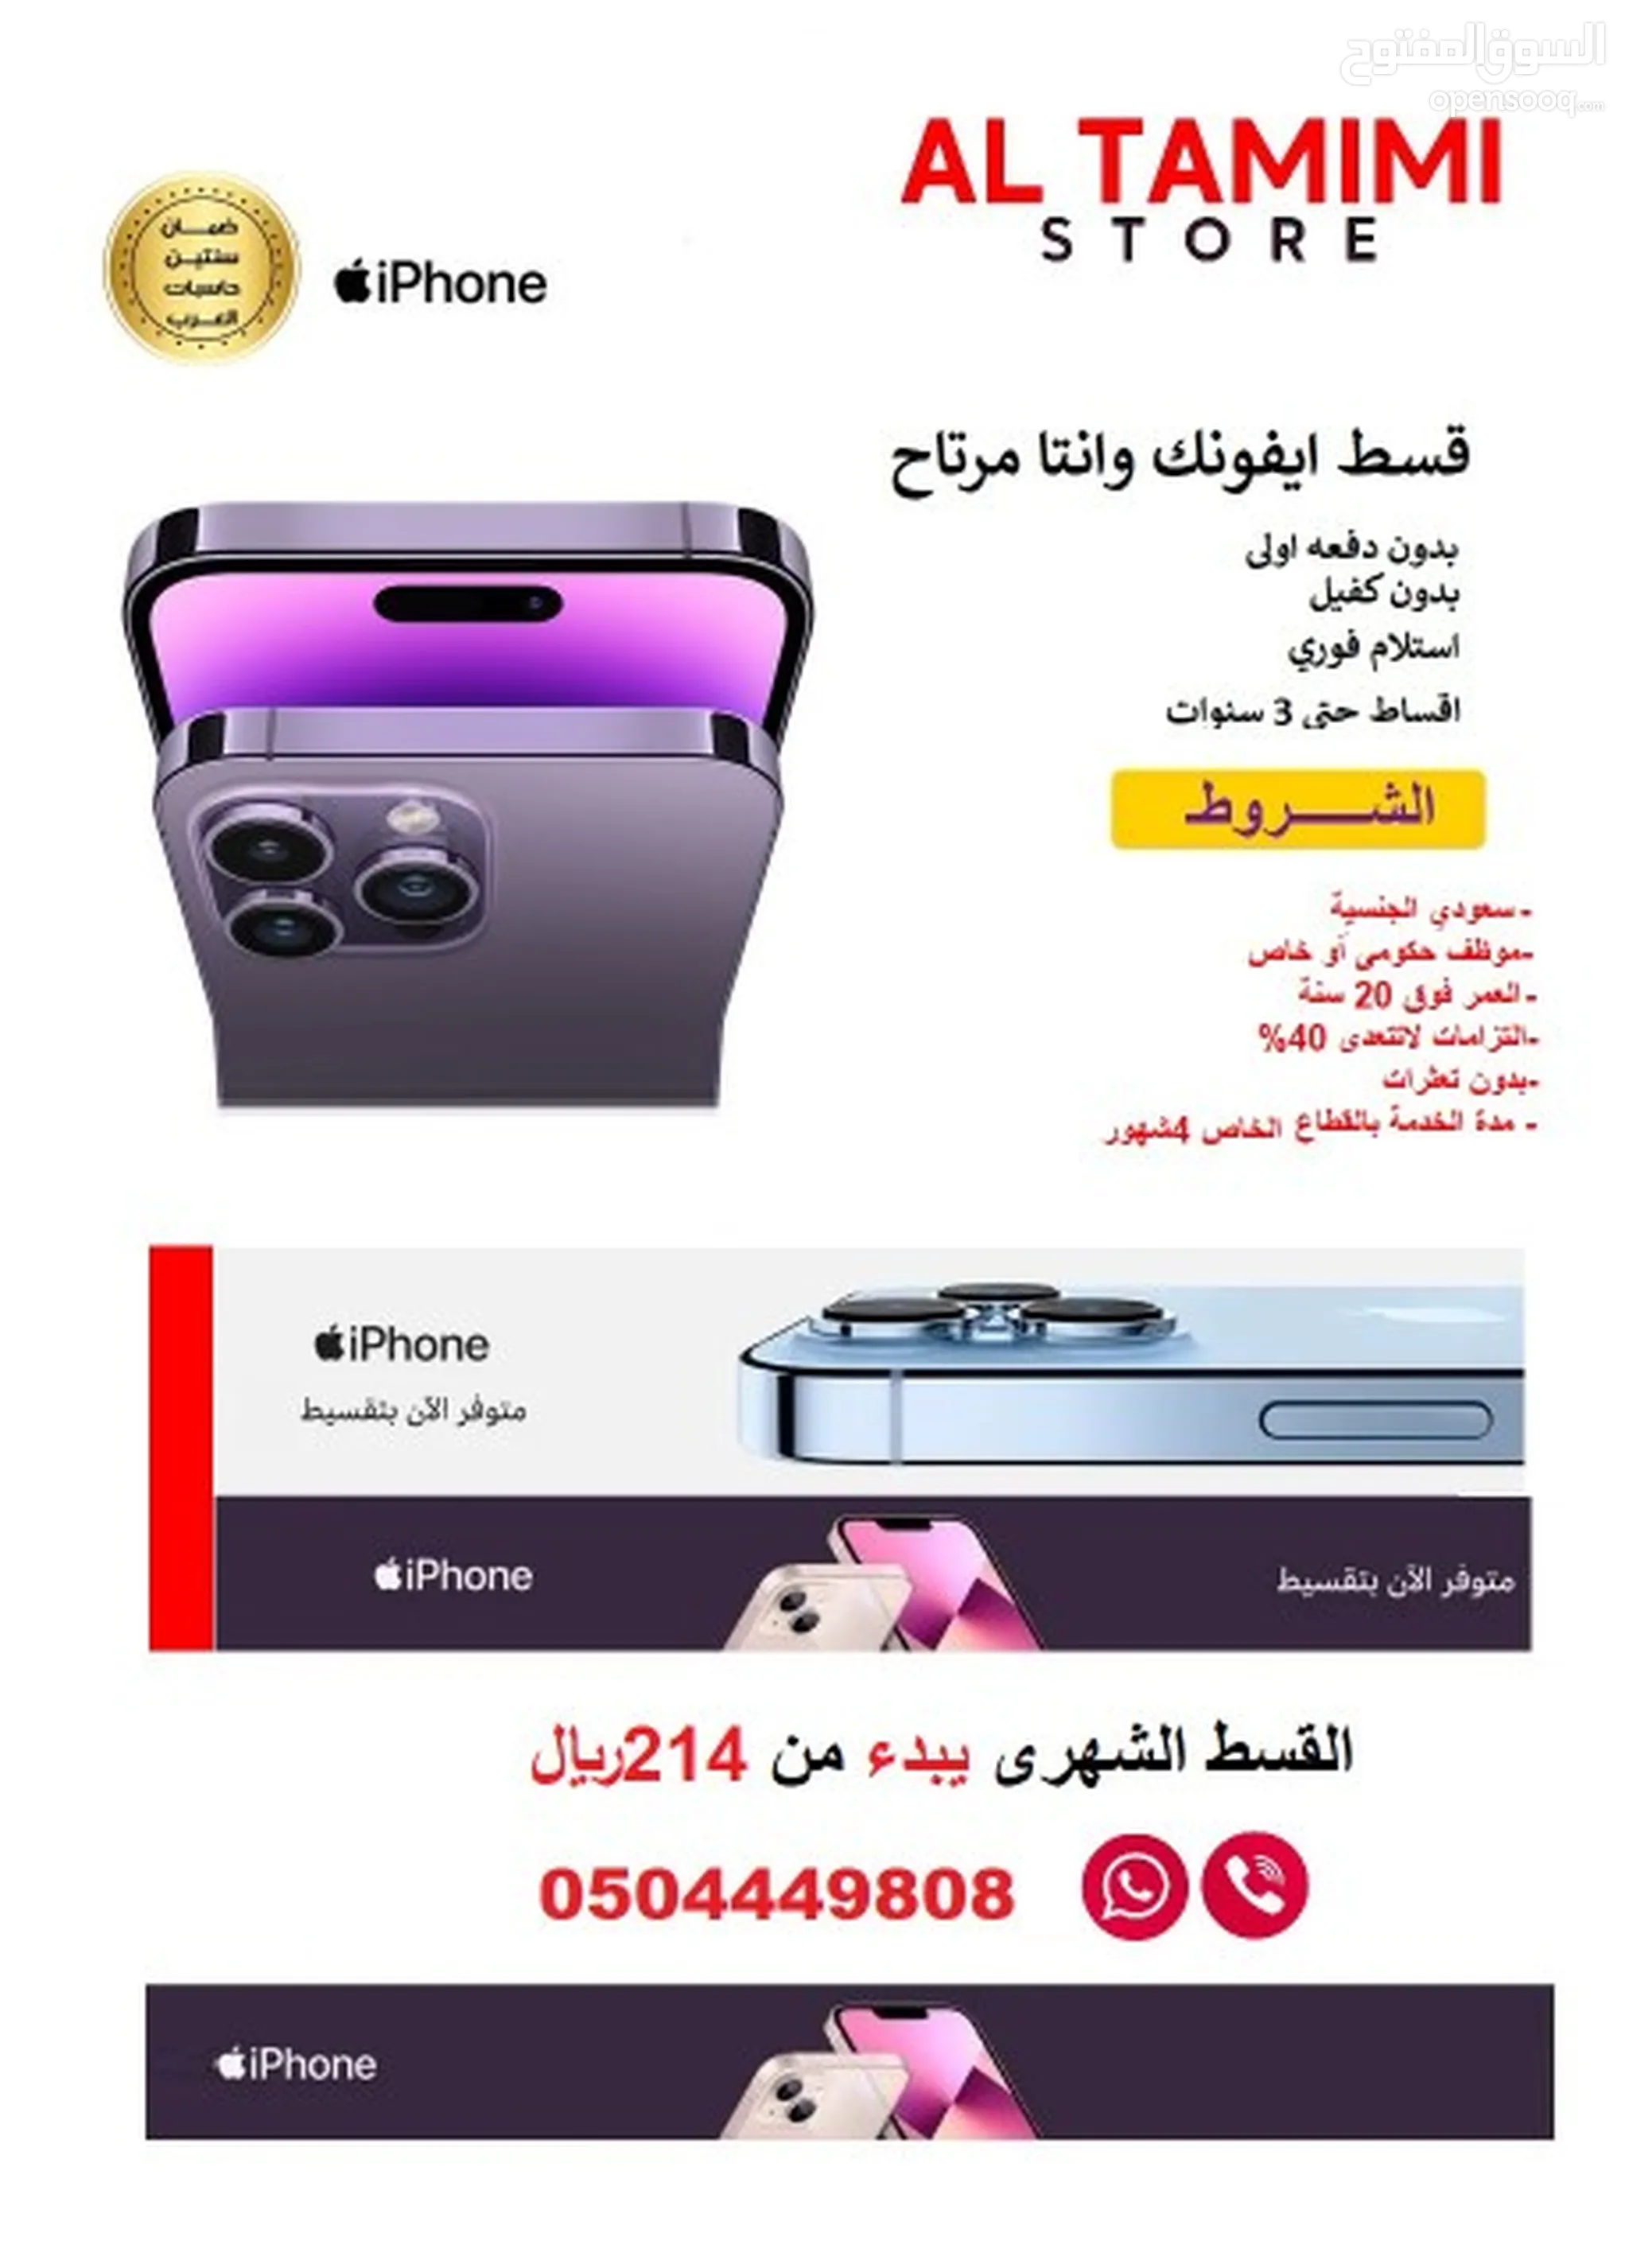 موبايلات ايفون للبيع : جوالات ايفون x : ايفون 11 : ارخص الاسعار في السعودية  | السوق المفتوح